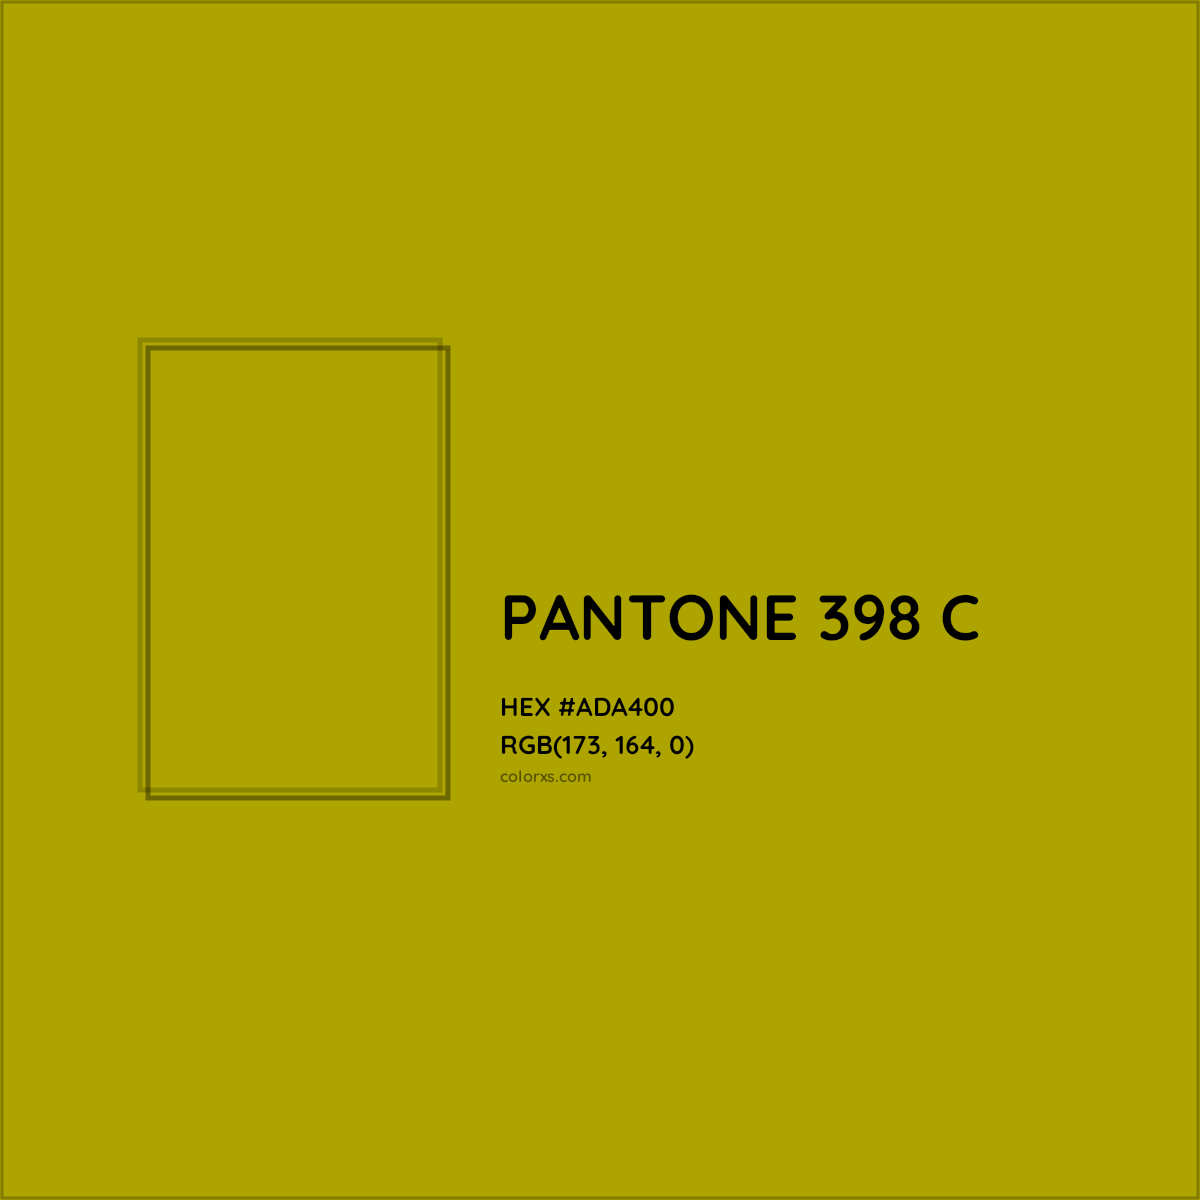 HEX #ADA400 PANTONE 398 C CMS Pantone PMS - Color Code